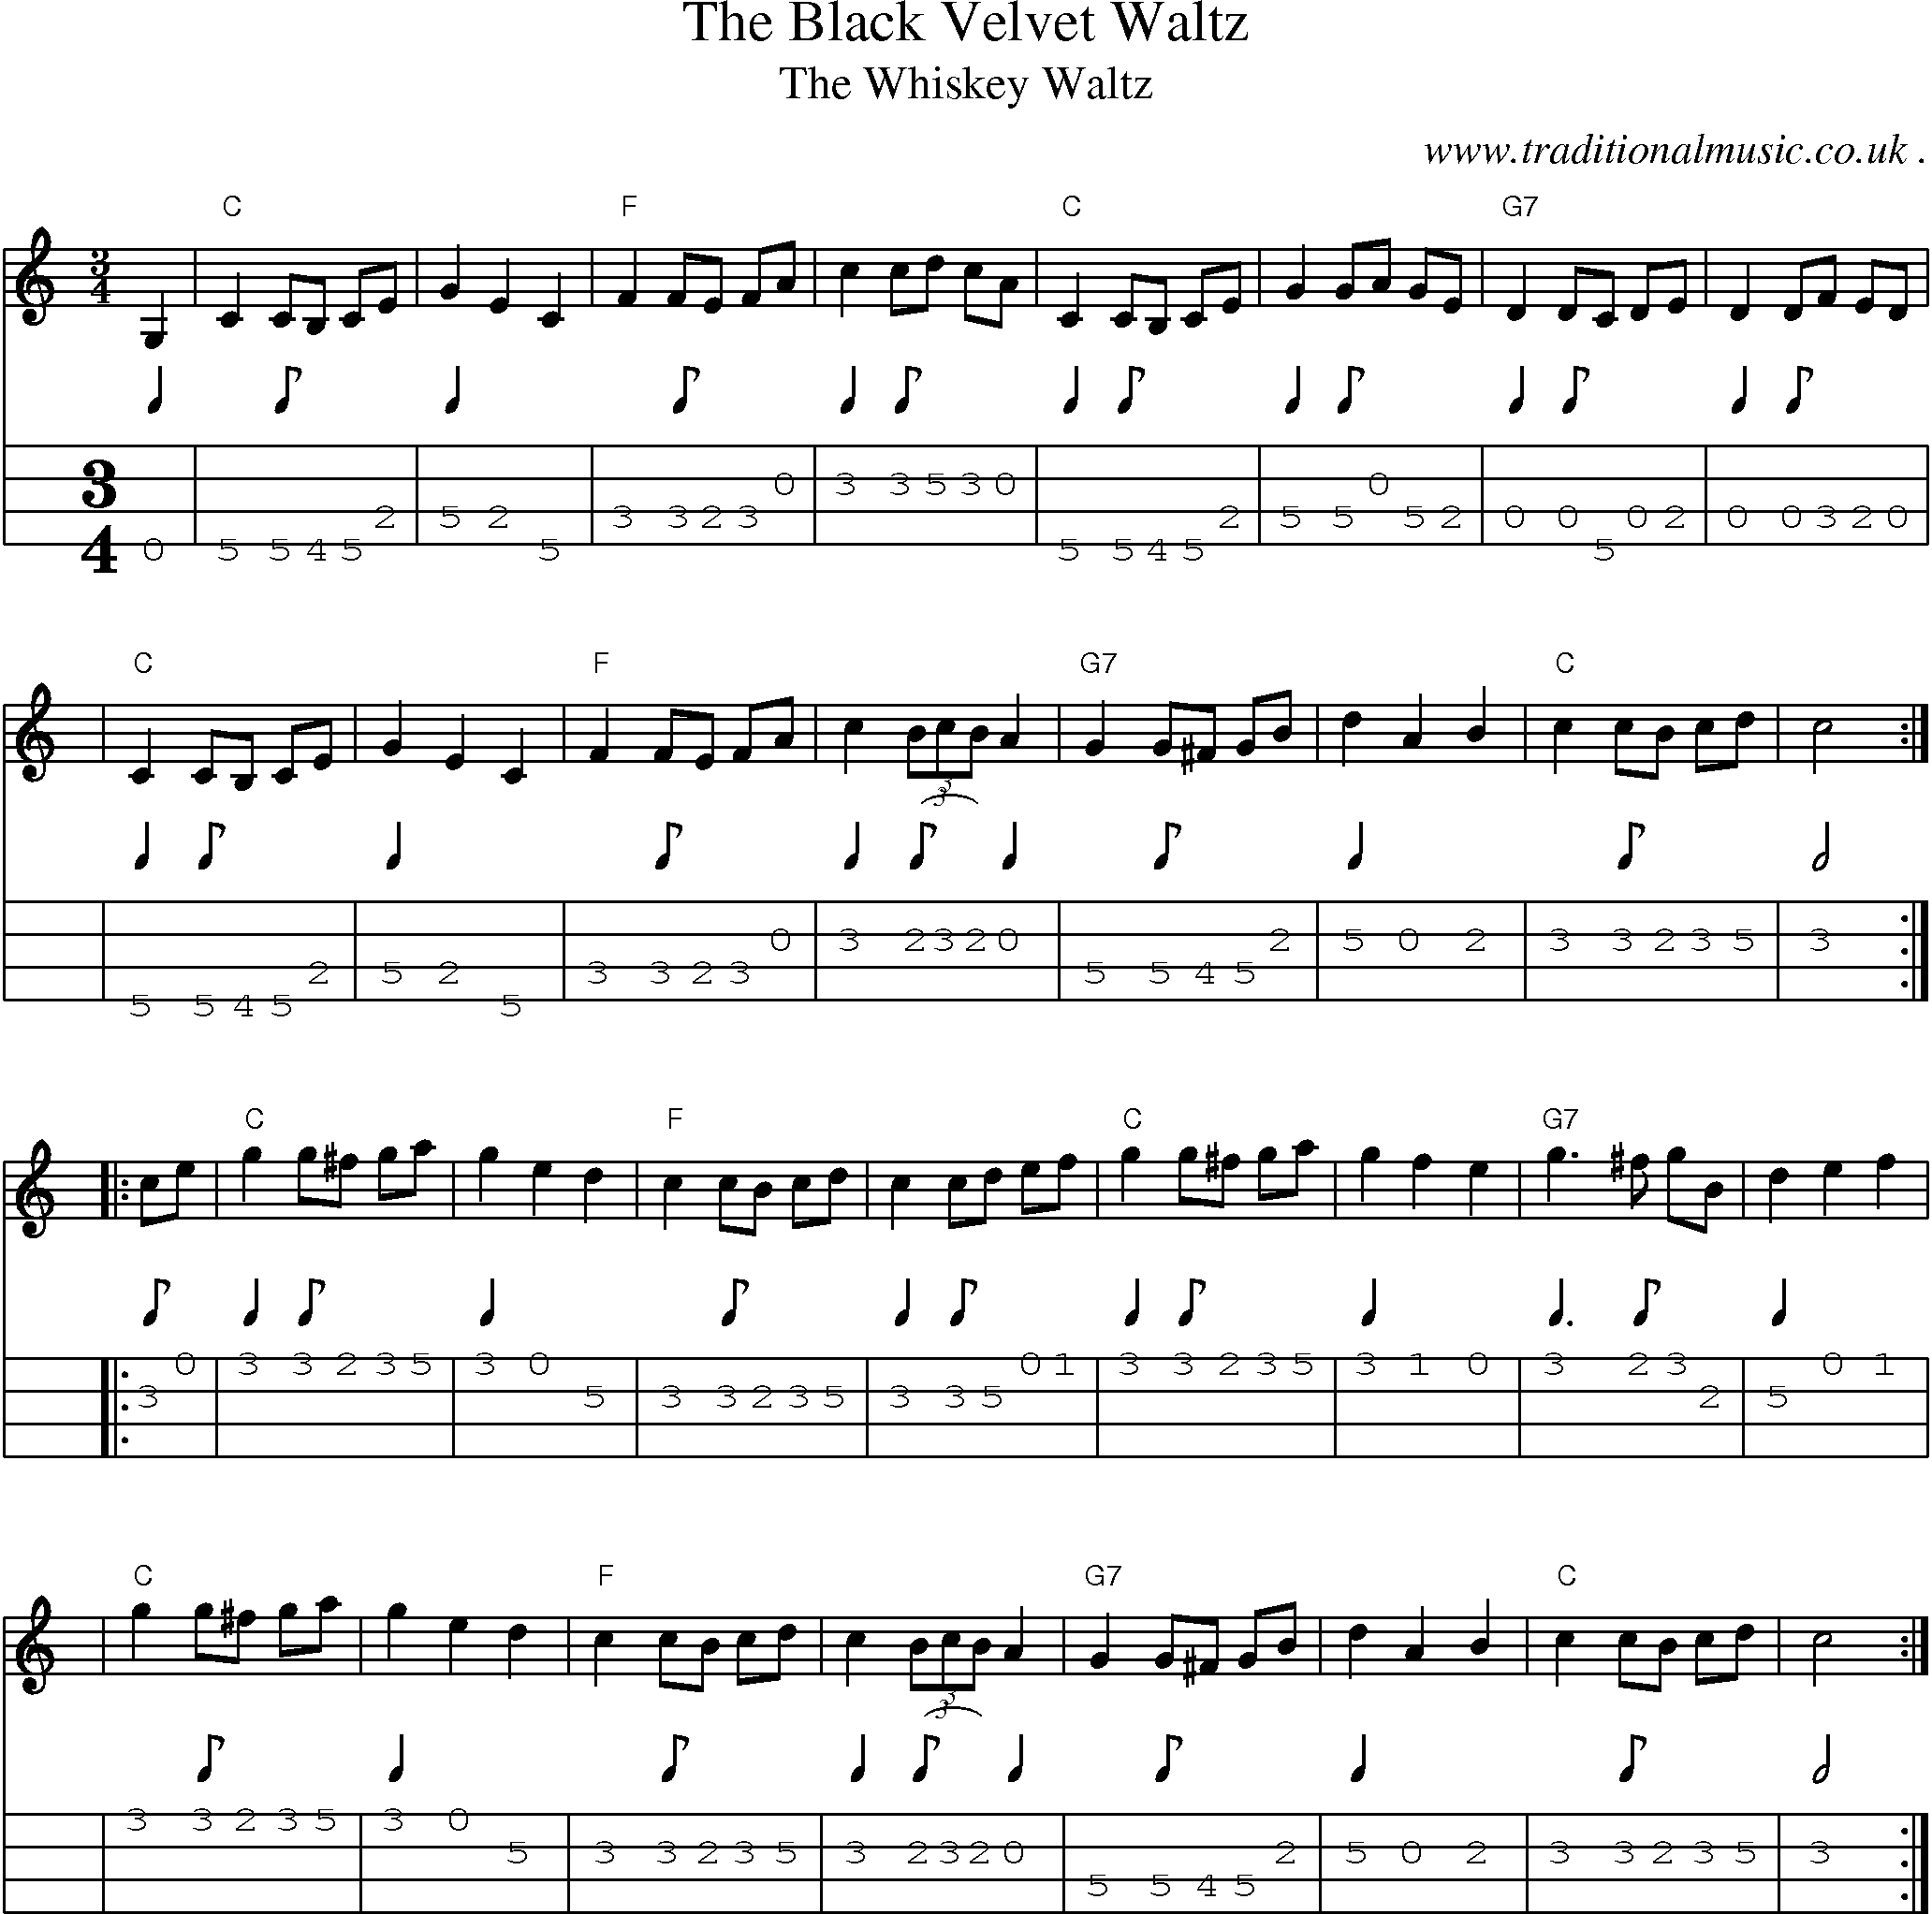 Music Score and Mandolin Tabs for The Black Velvet Waltz